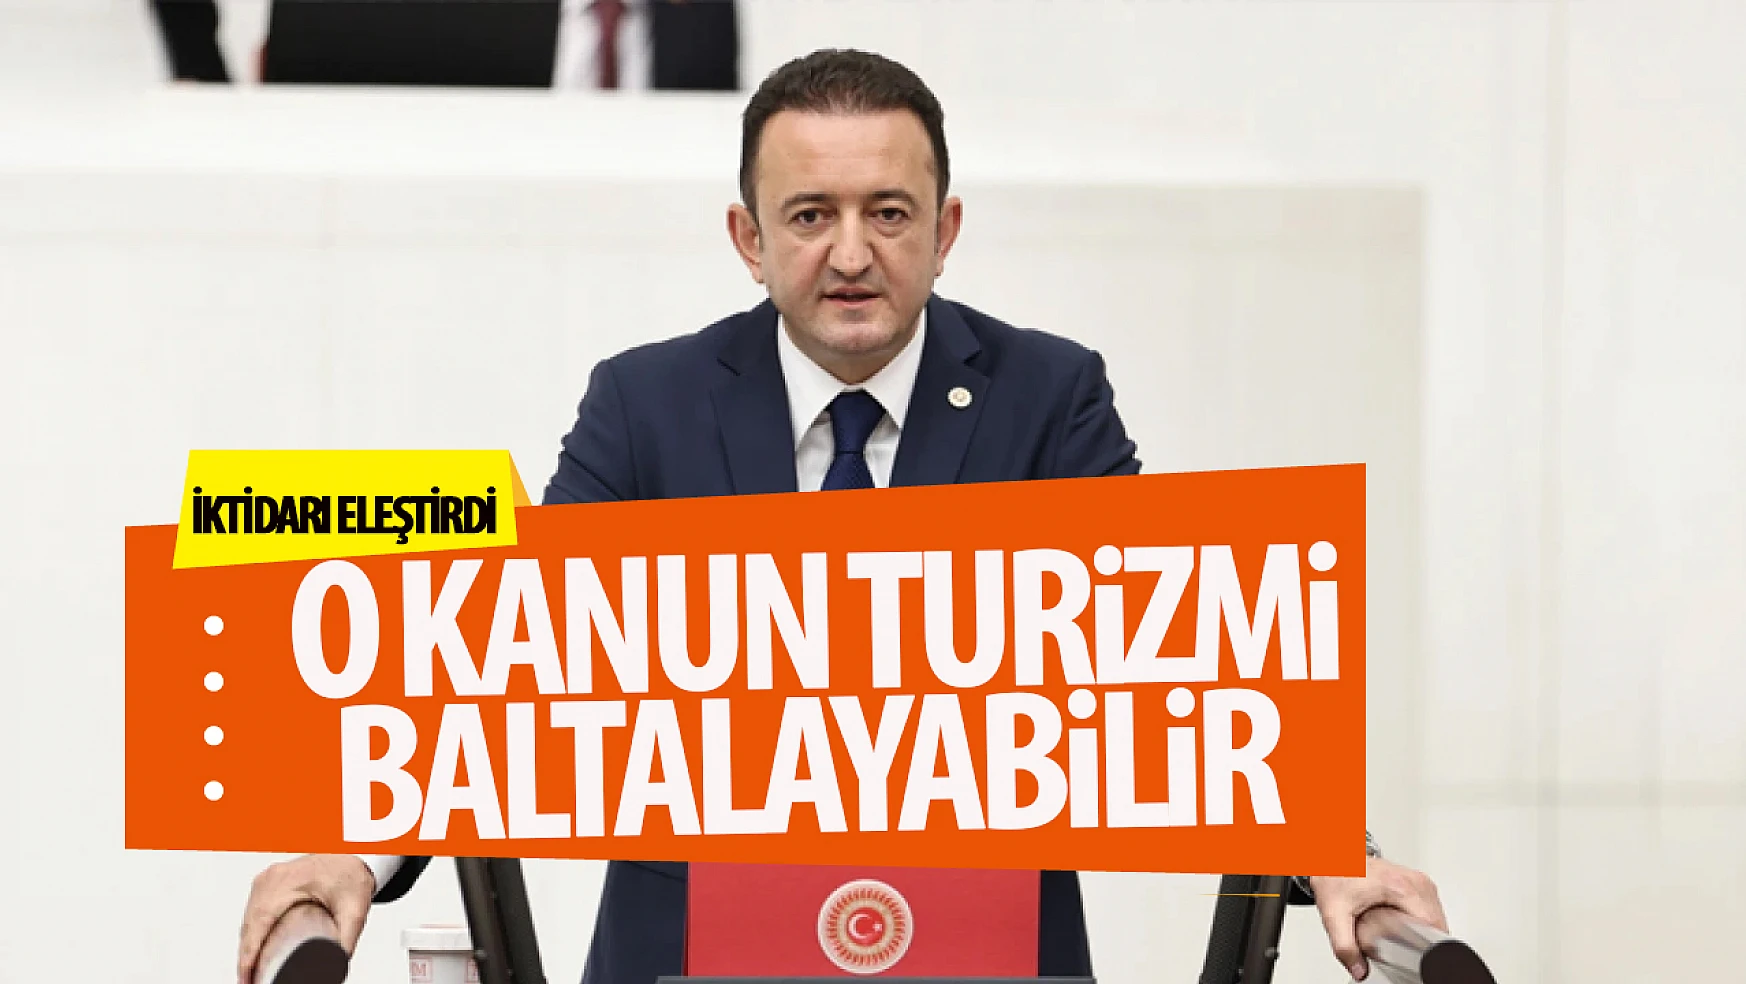 CHP Konya Milletvekili Bektaş turizmle sektörü için verilen kanun teklifini eleştirdi